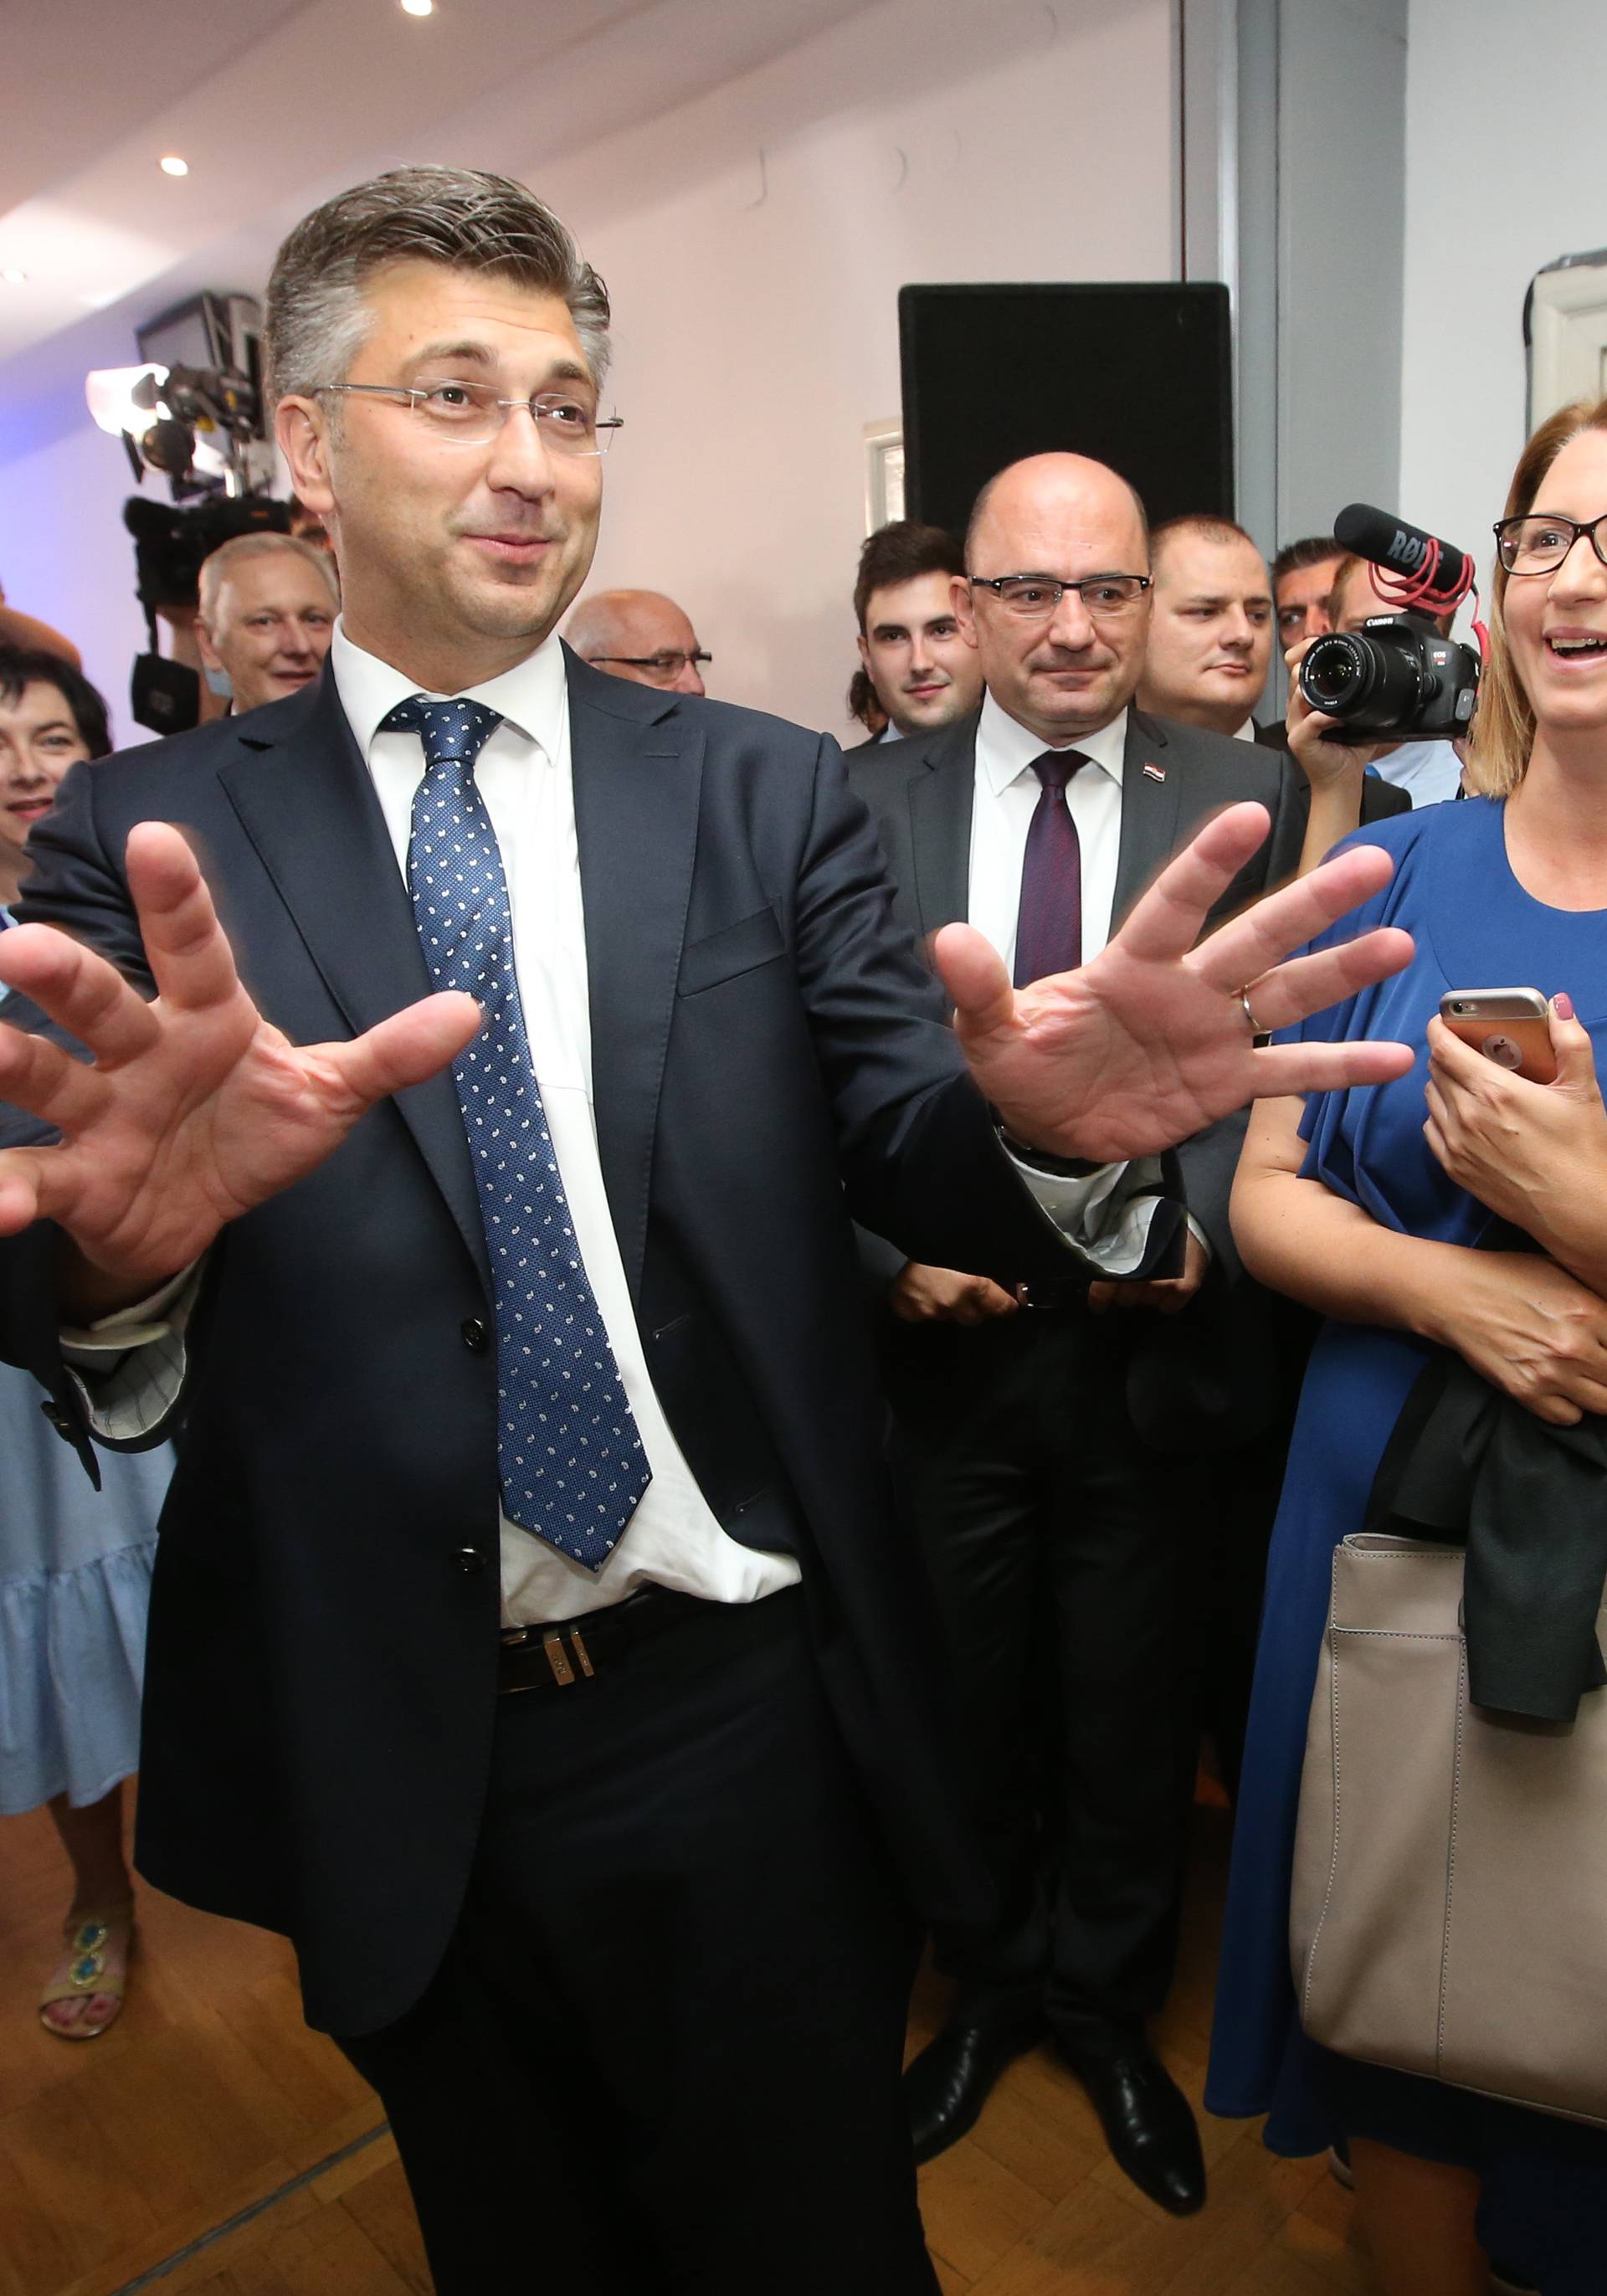 HDZ relativni pobjednik izbora: Osvojili 61 mandat, a SDP 54